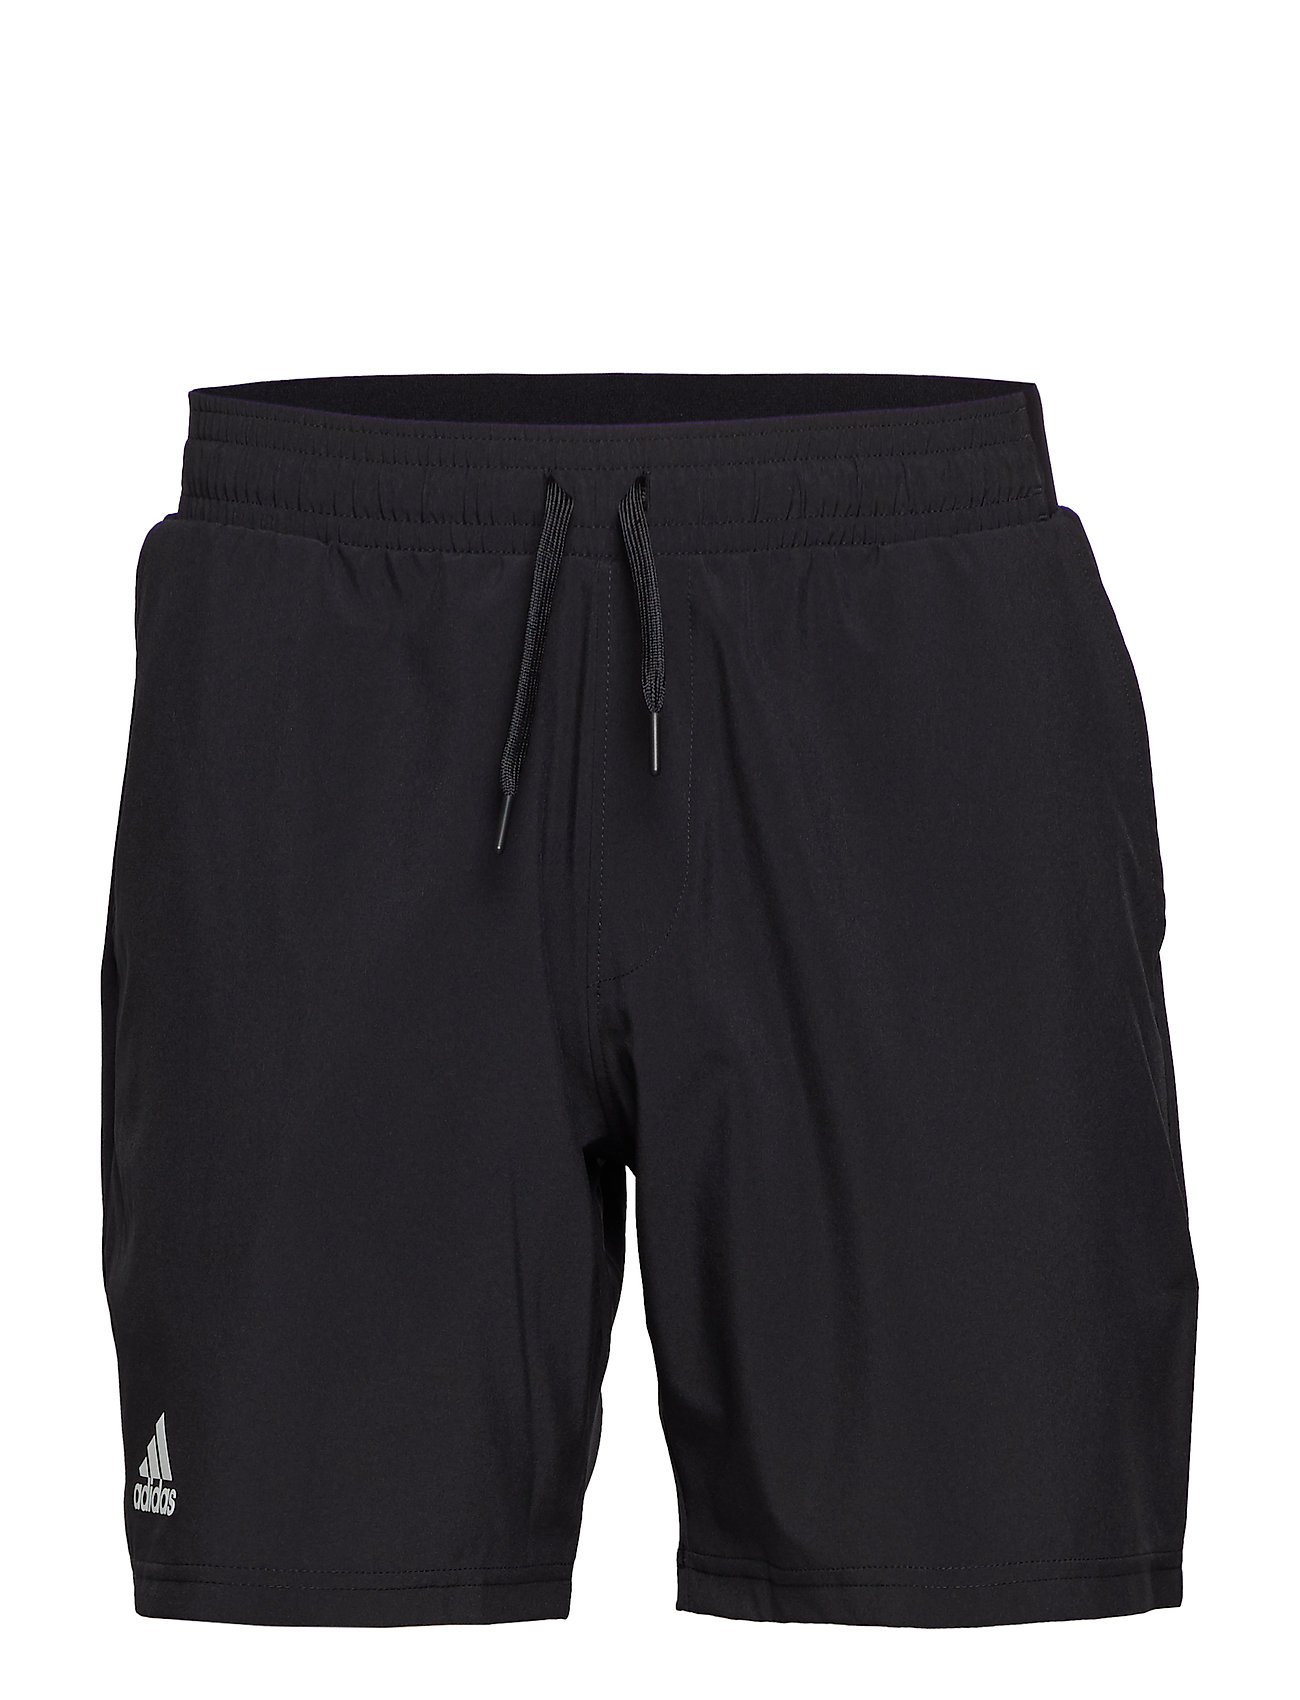 adidas 7 inch shorts